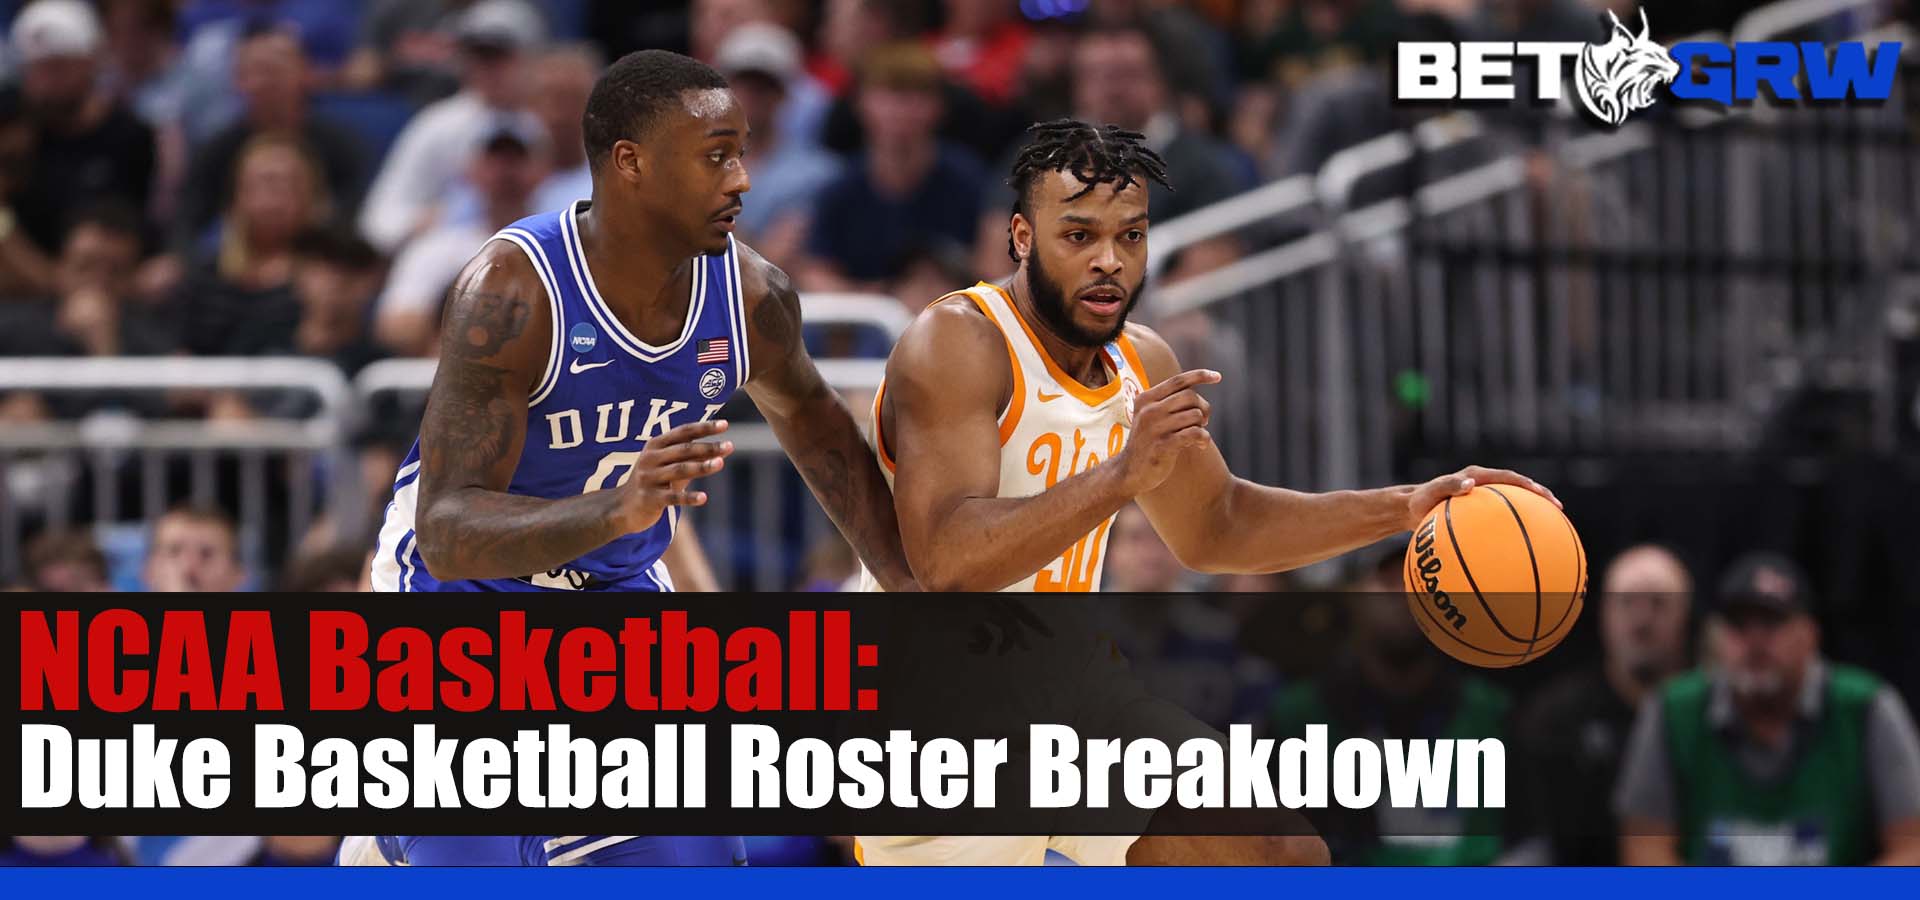 Duke Basketball Roster Breakdown Projected Starting Lineup, Bench